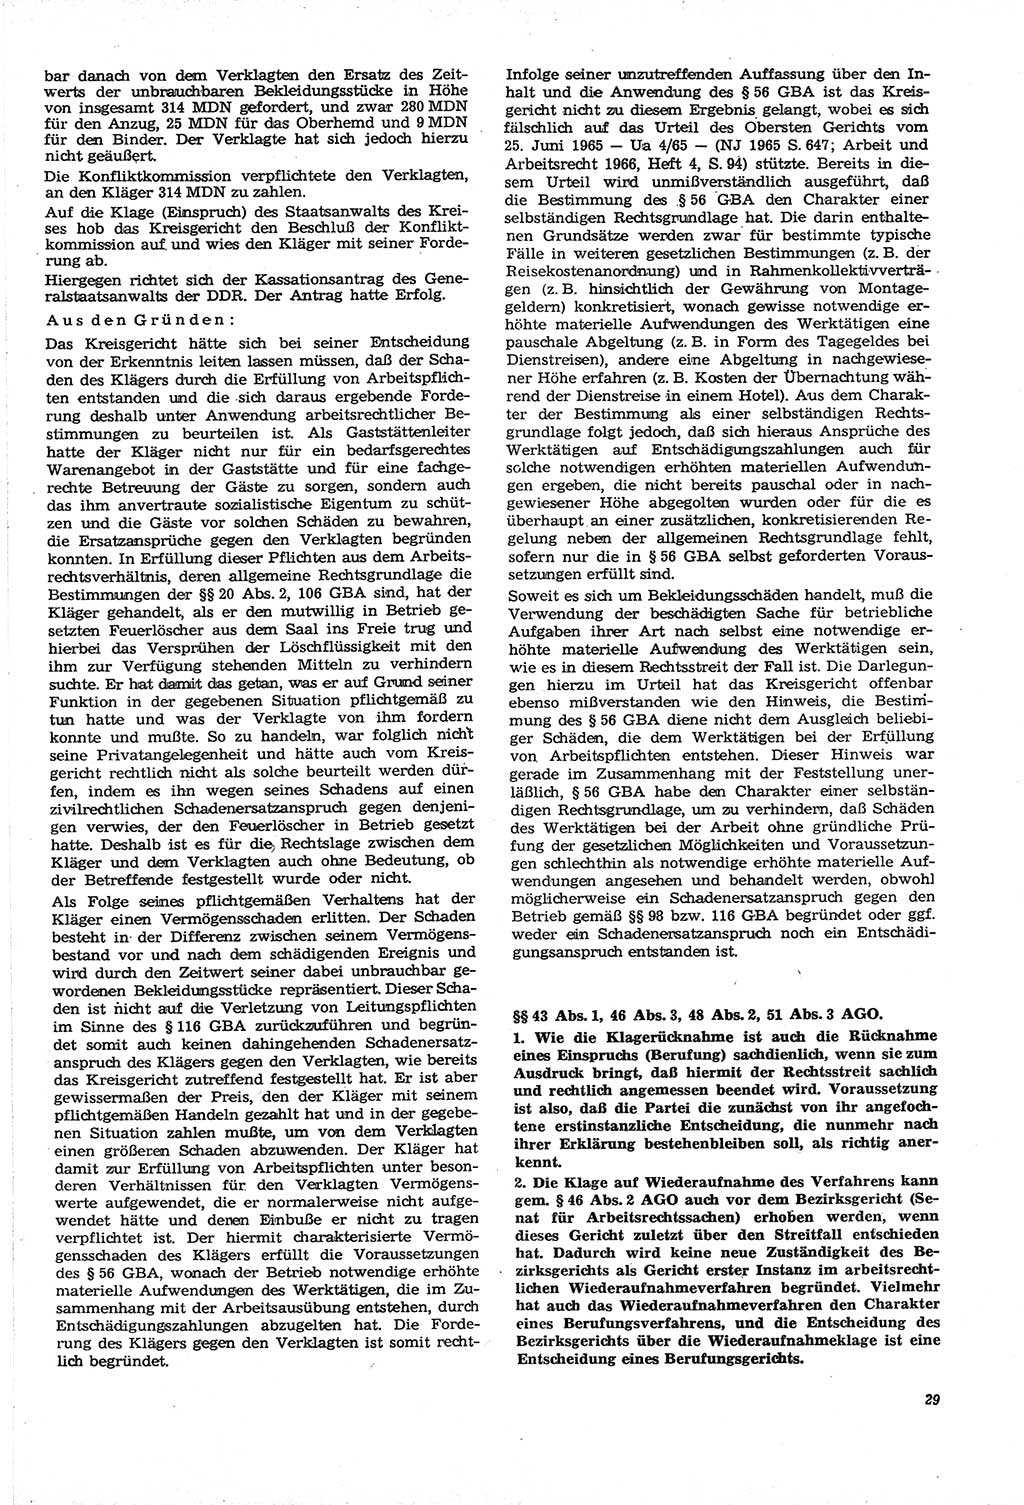 Neue Justiz (NJ), Zeitschrift für Recht und Rechtswissenschaft [Deutsche Demokratische Republik (DDR)], 21. Jahrgang 1967, Seite 29 (NJ DDR 1967, S. 29)